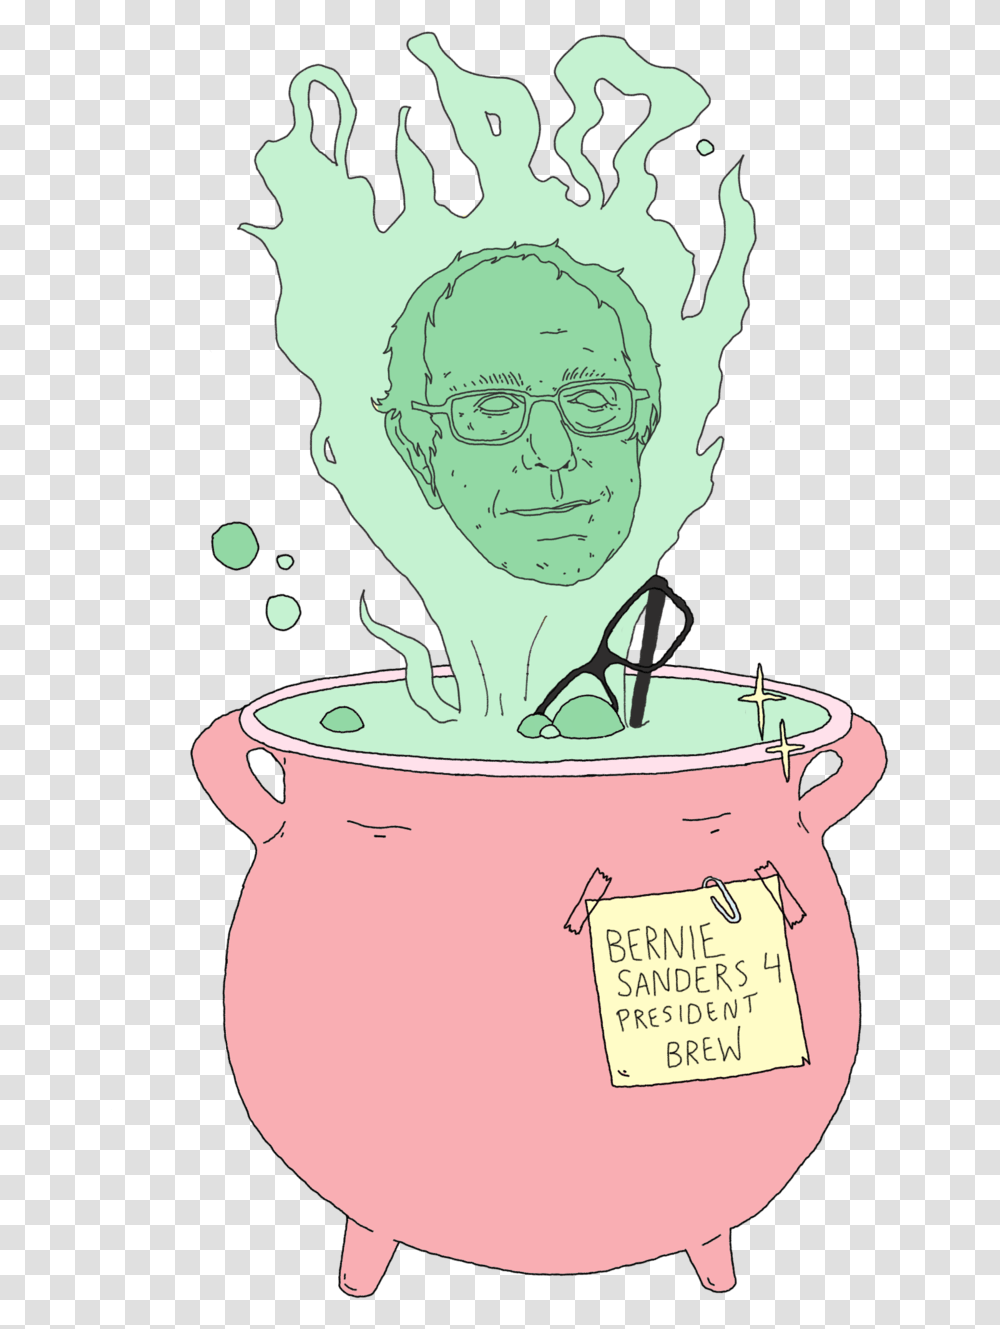 Bernie Sanders Head, Boiling, Pot, Bowl, Glasses Transparent Png